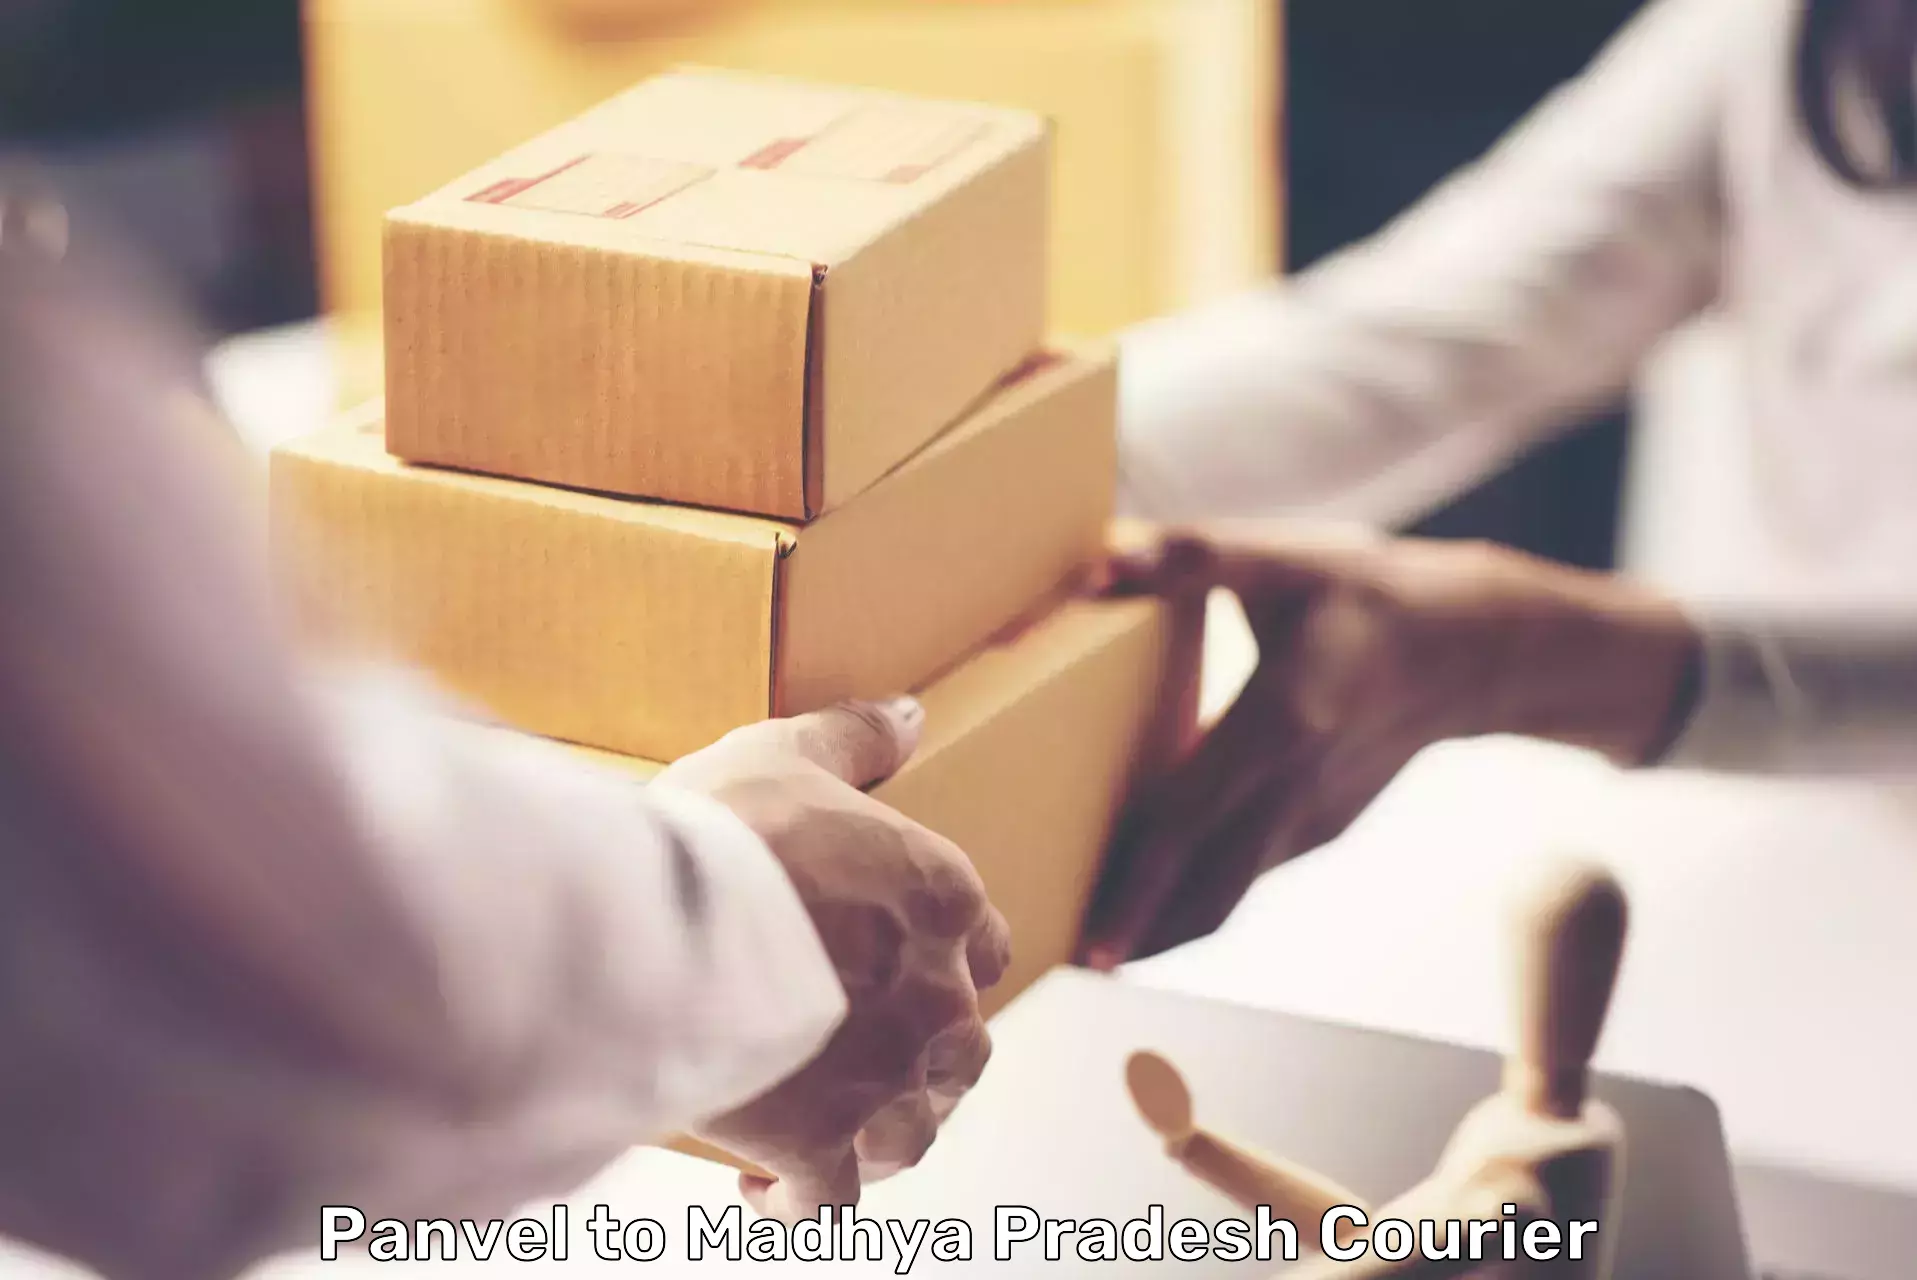 Efficient parcel service Panvel to Indore